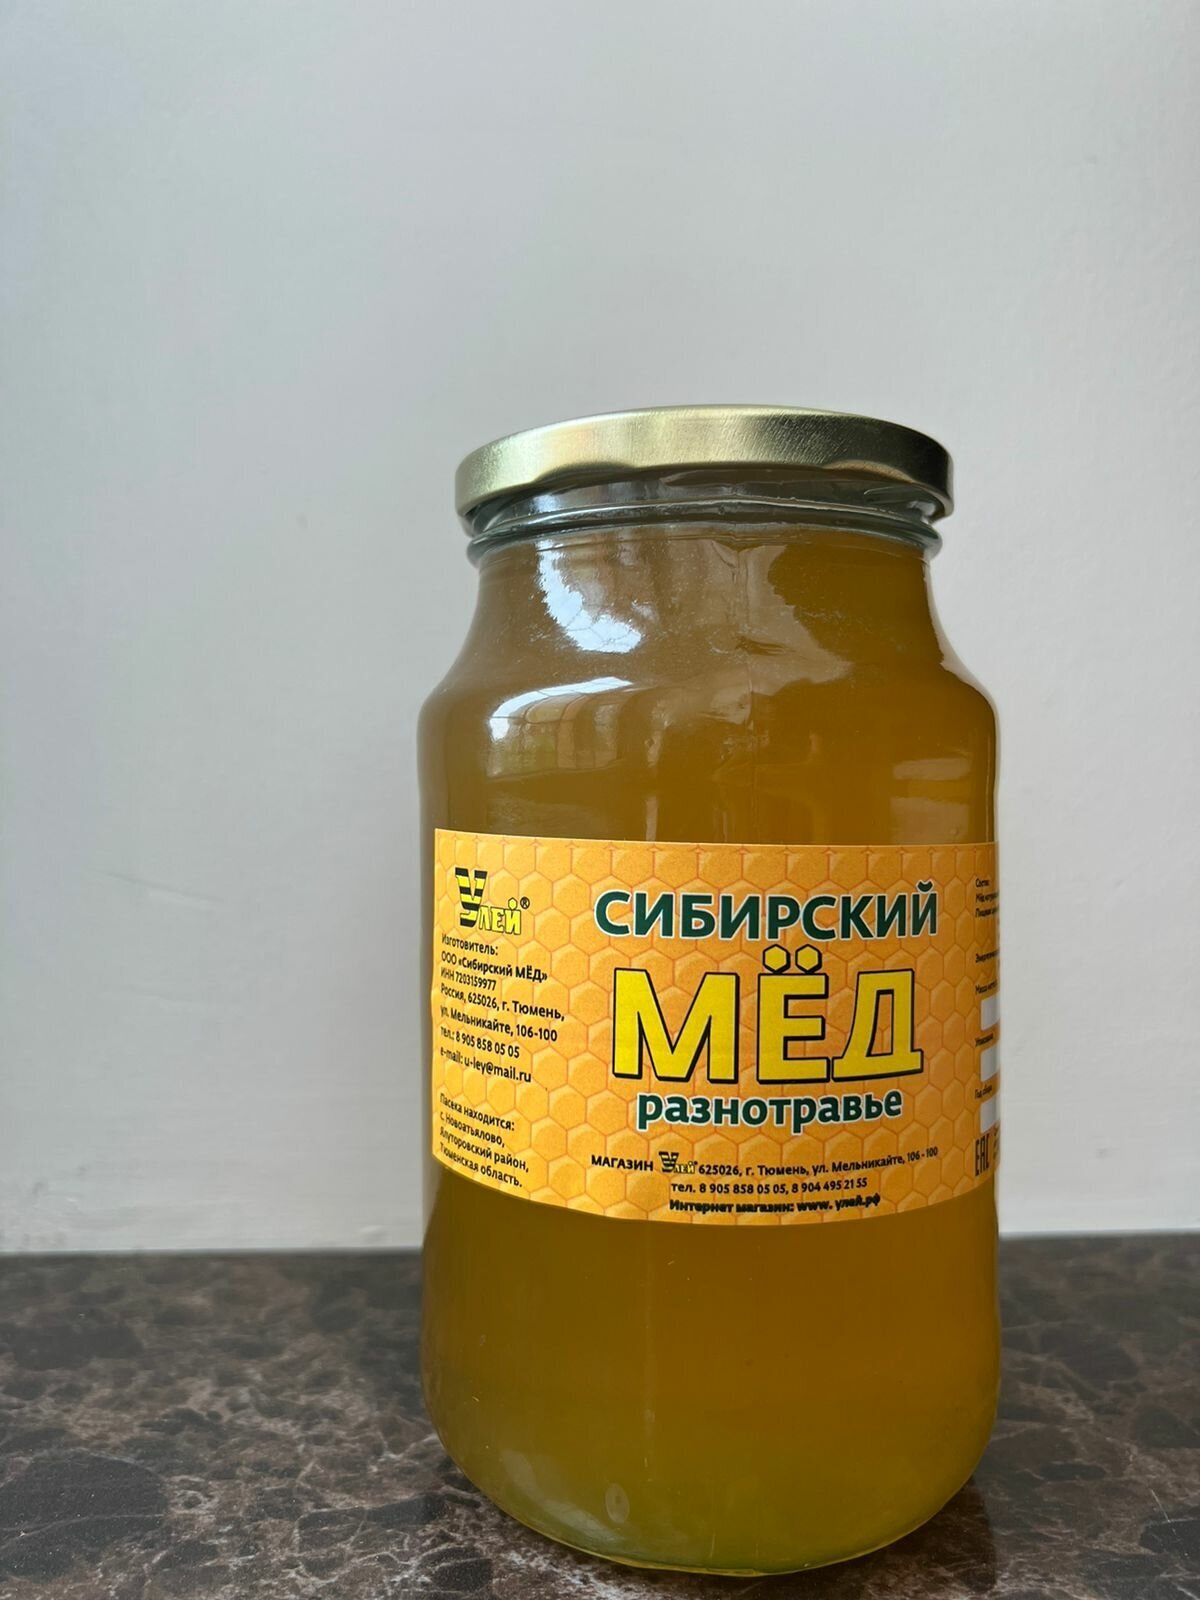 Сибирский МЁД Разнотравье, 1 литр.